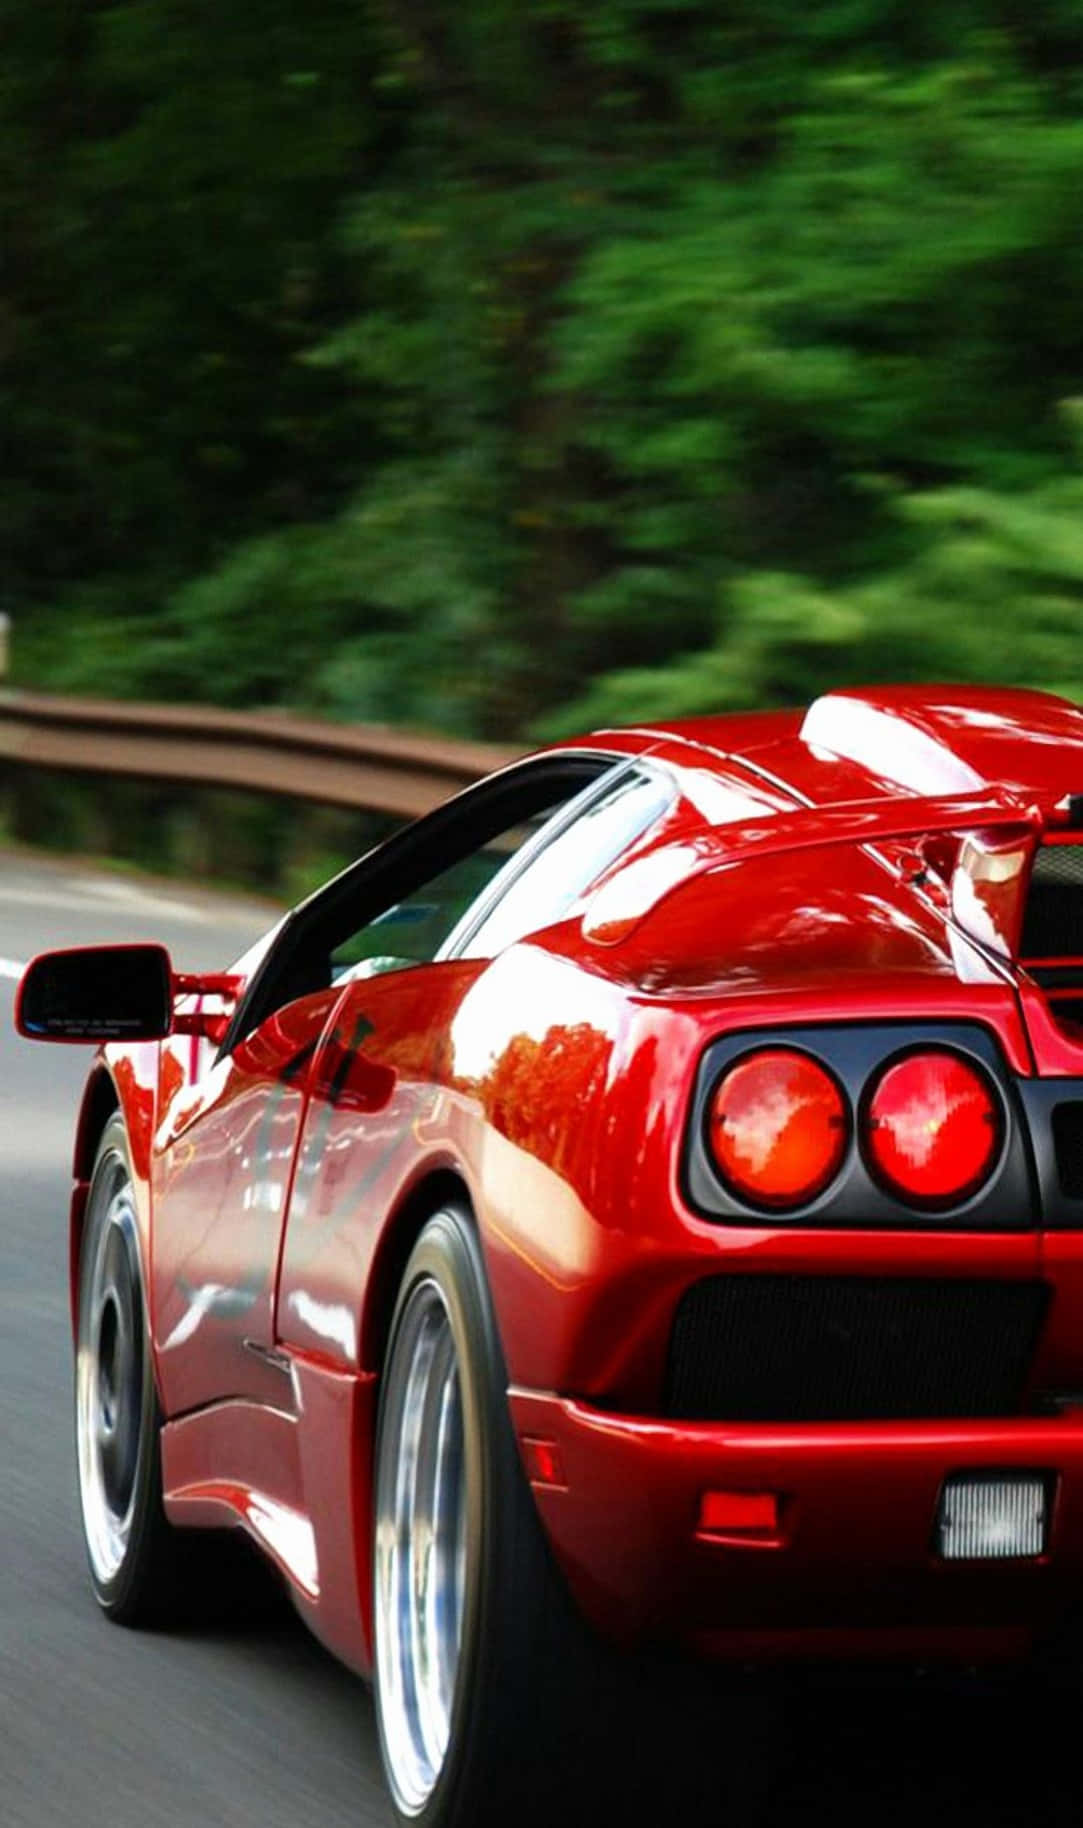 Red Lamborghini Diablo Car Android Wallpaper